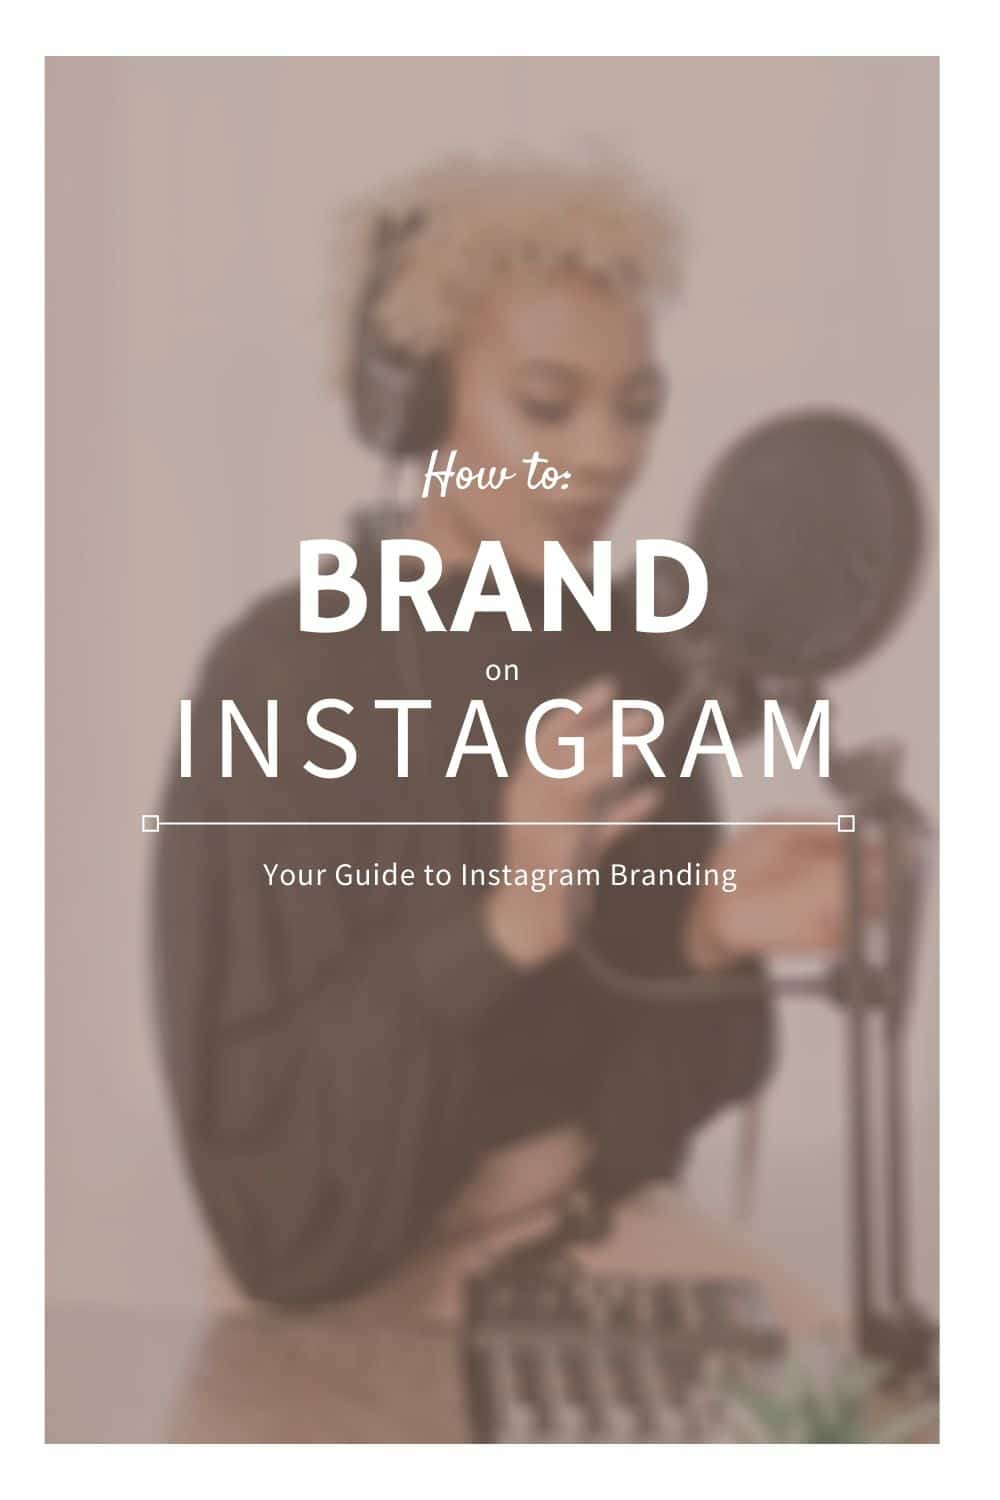 Guide to Instagram branding